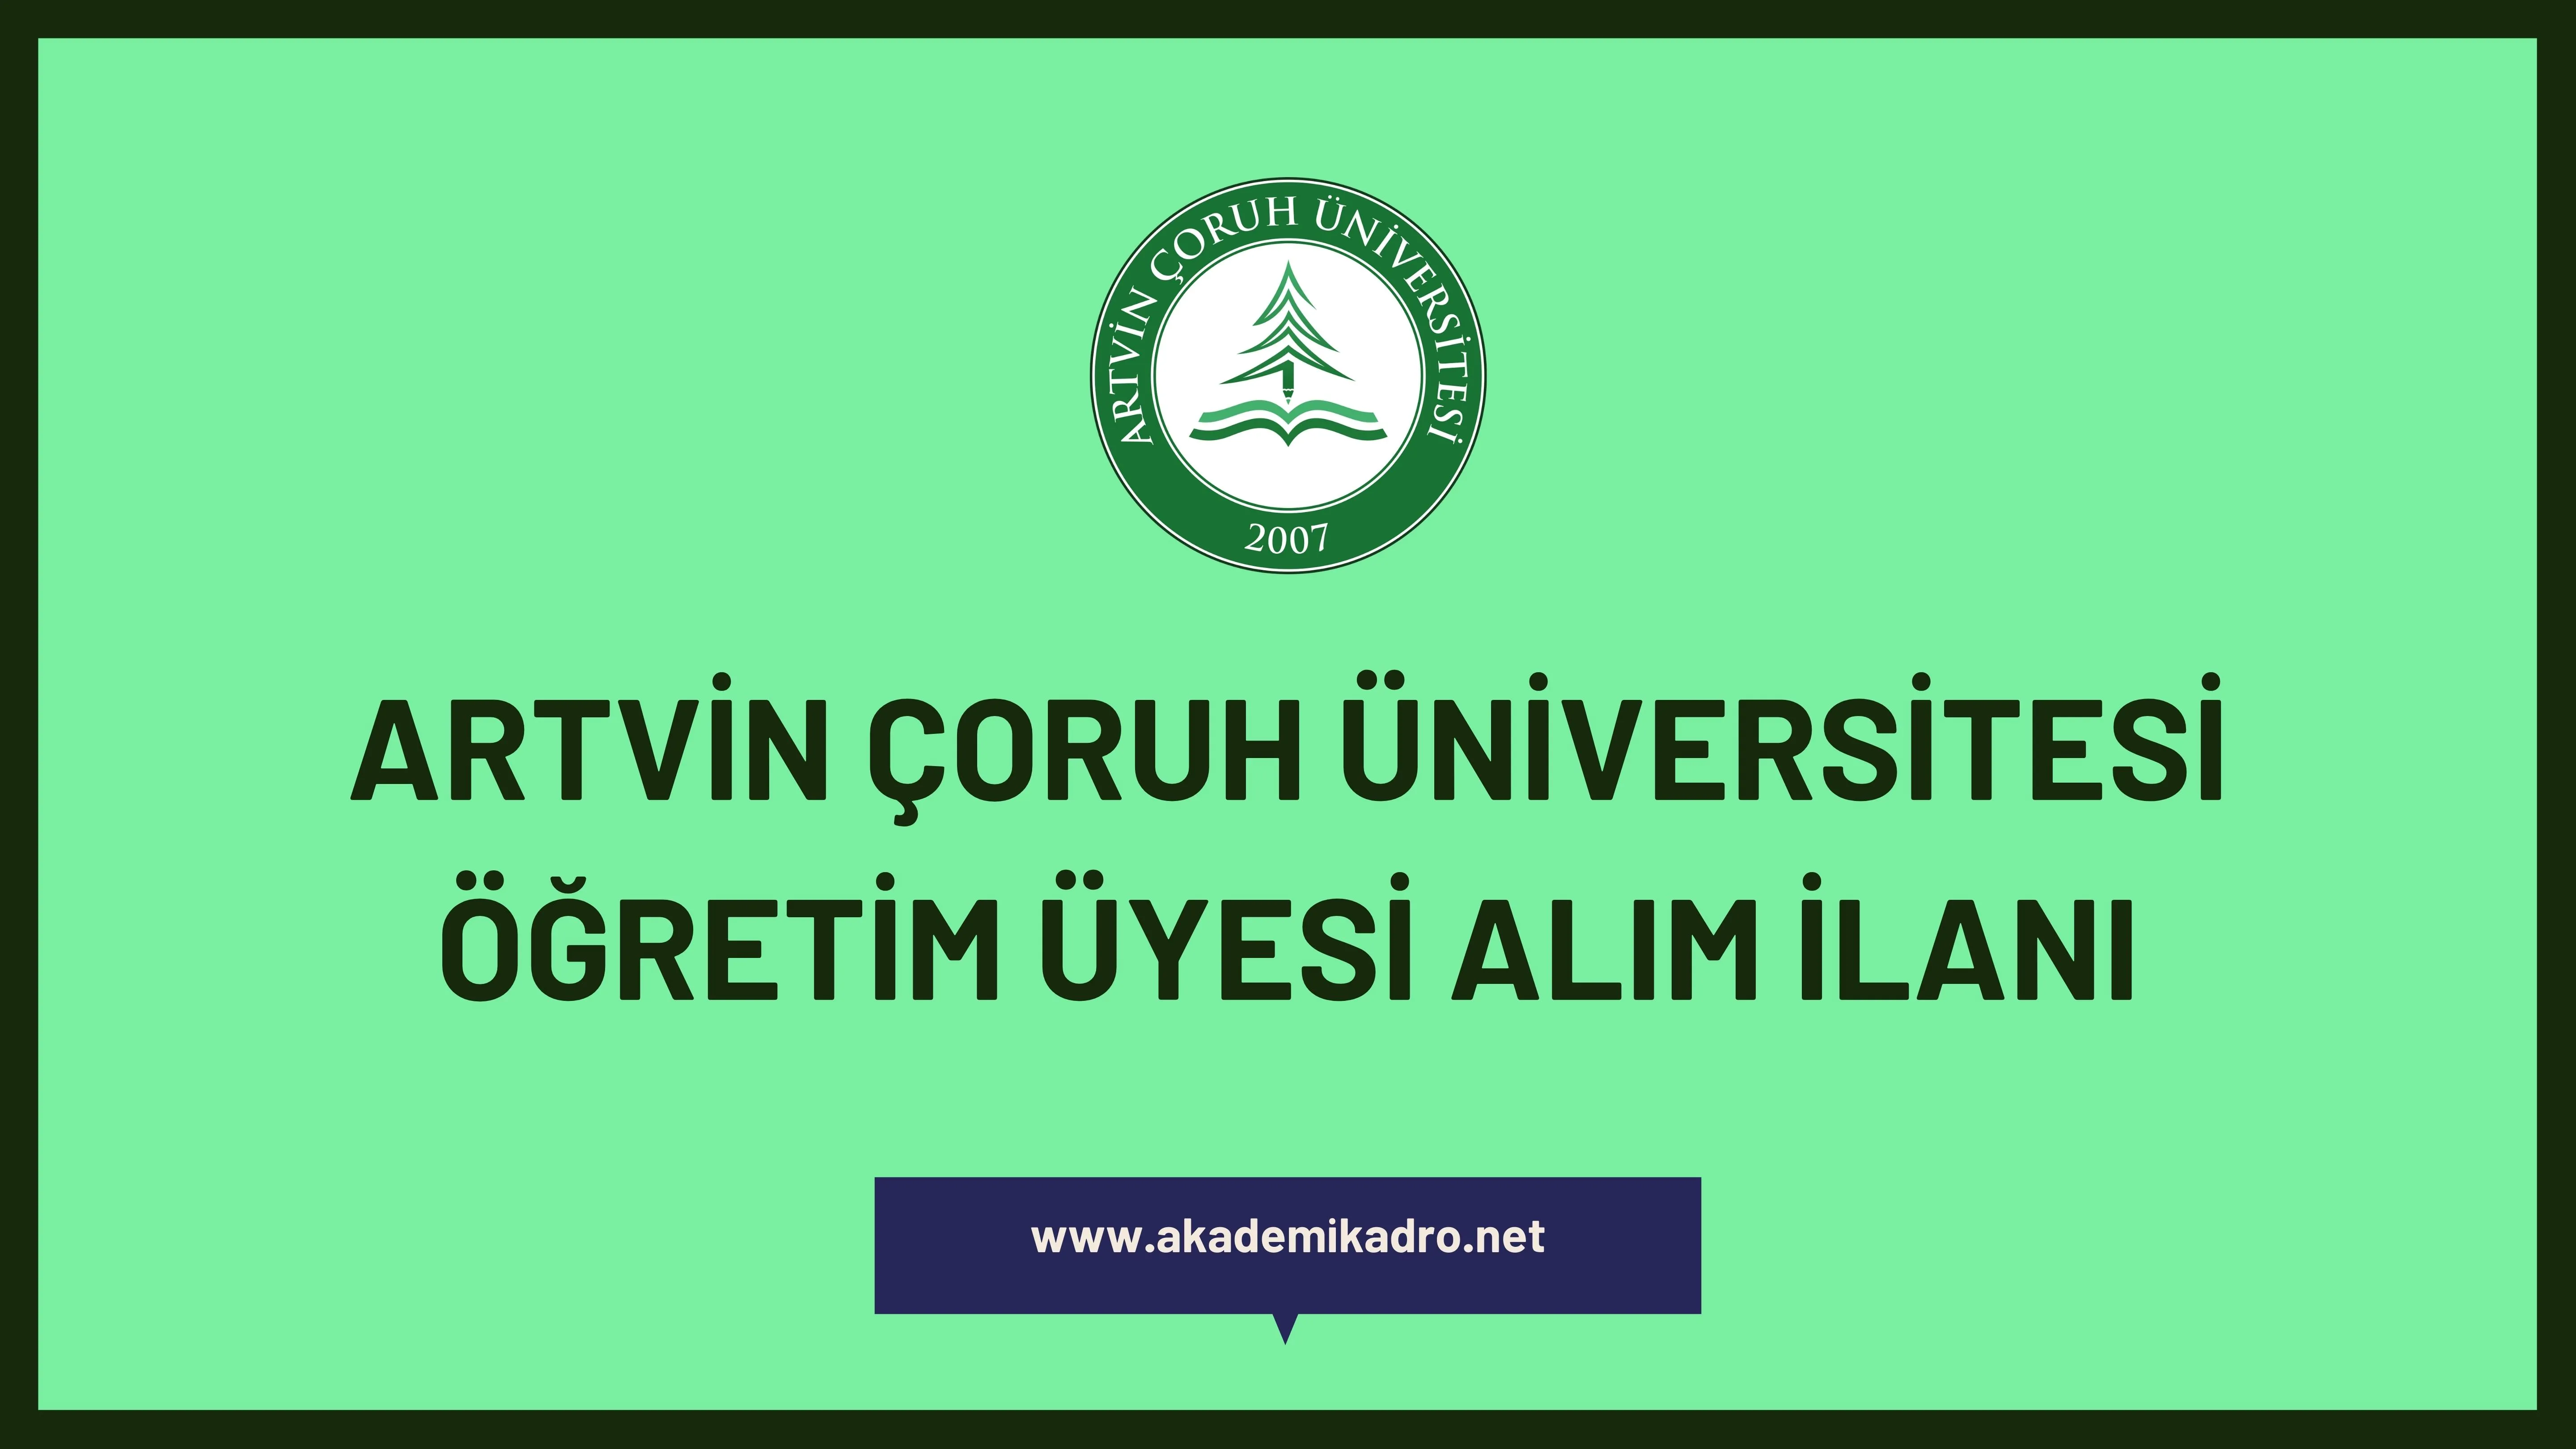 Artvin Çoruh Üniversitesi birçok alandan 14 öğretim üyesi alacak.